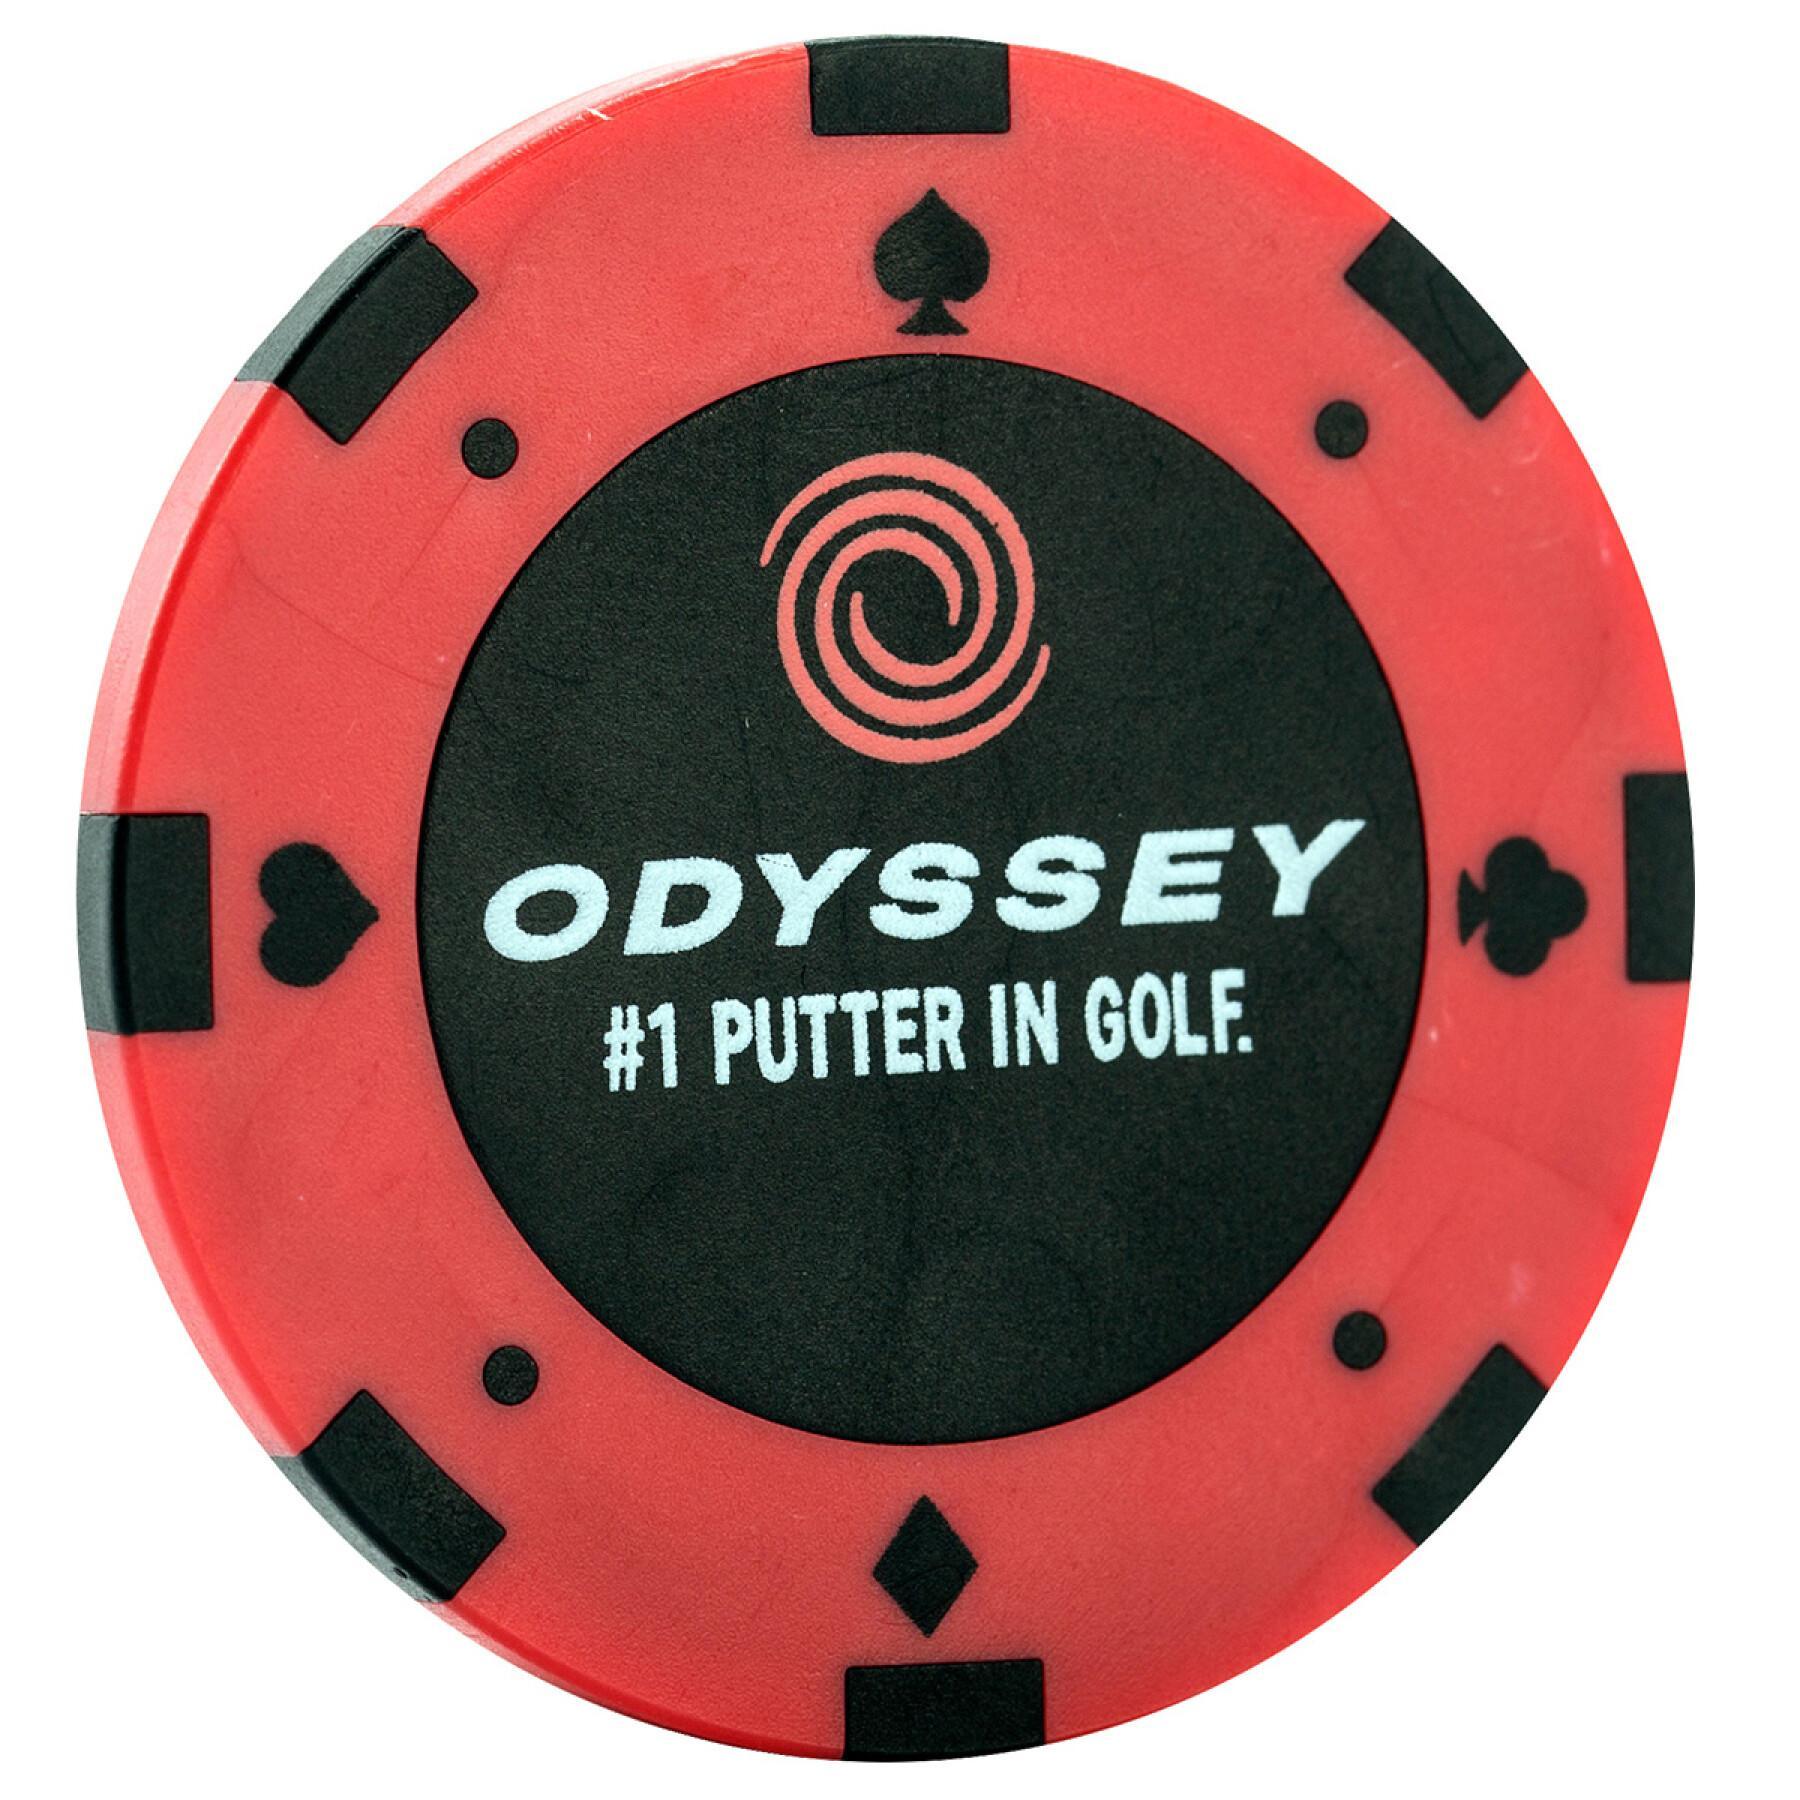 Marcadores de bolas de golfe Callaway odyssey poker chip